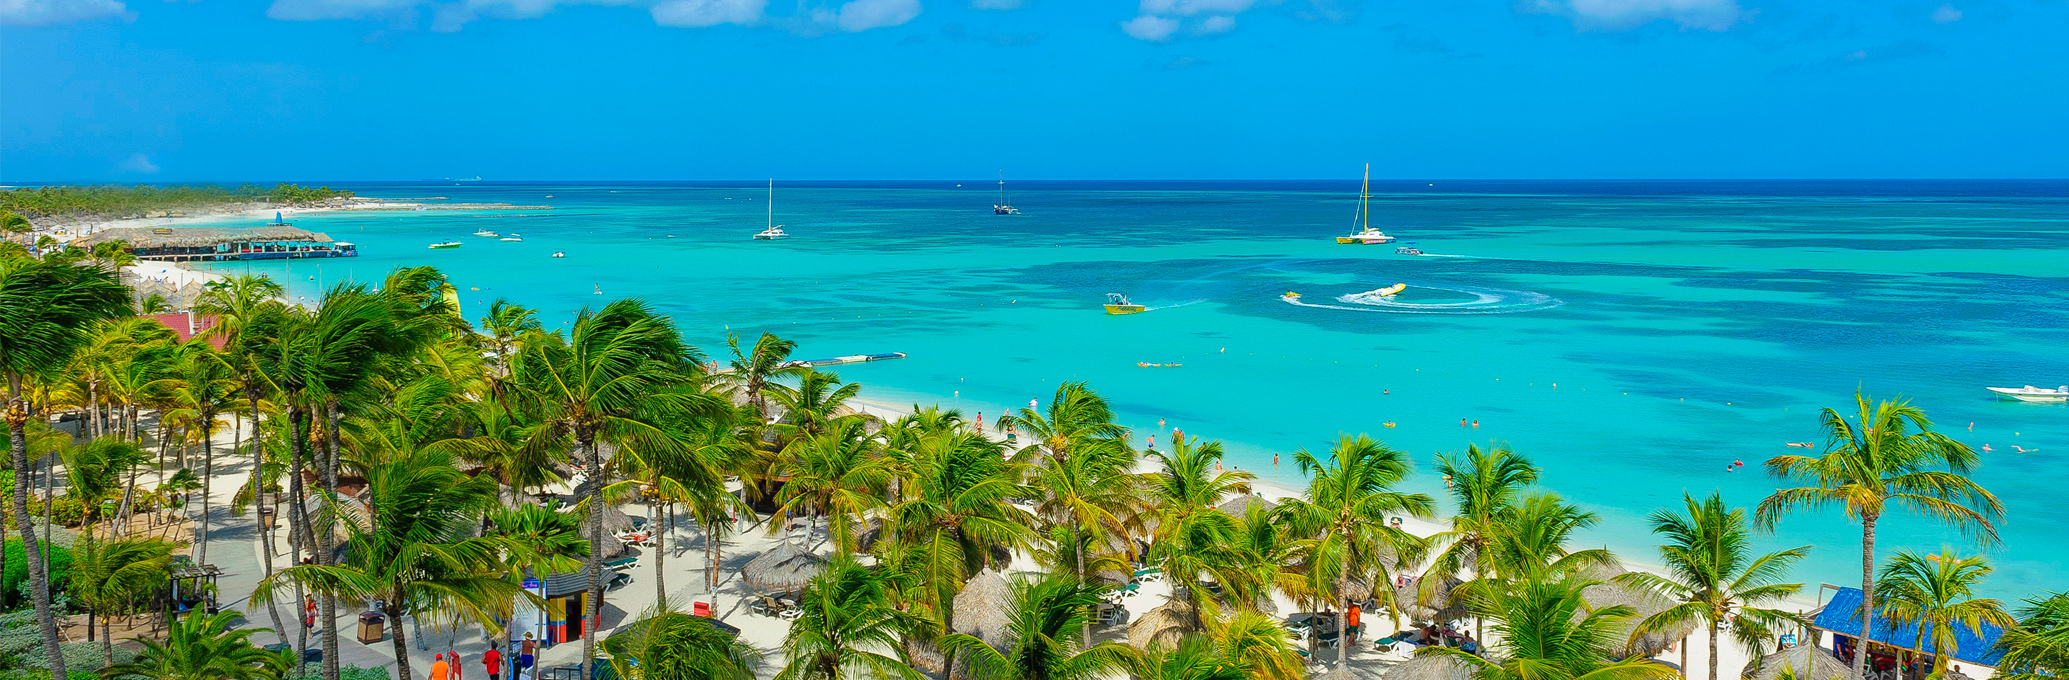 Barceló Aruba: hoteles y mejores playas